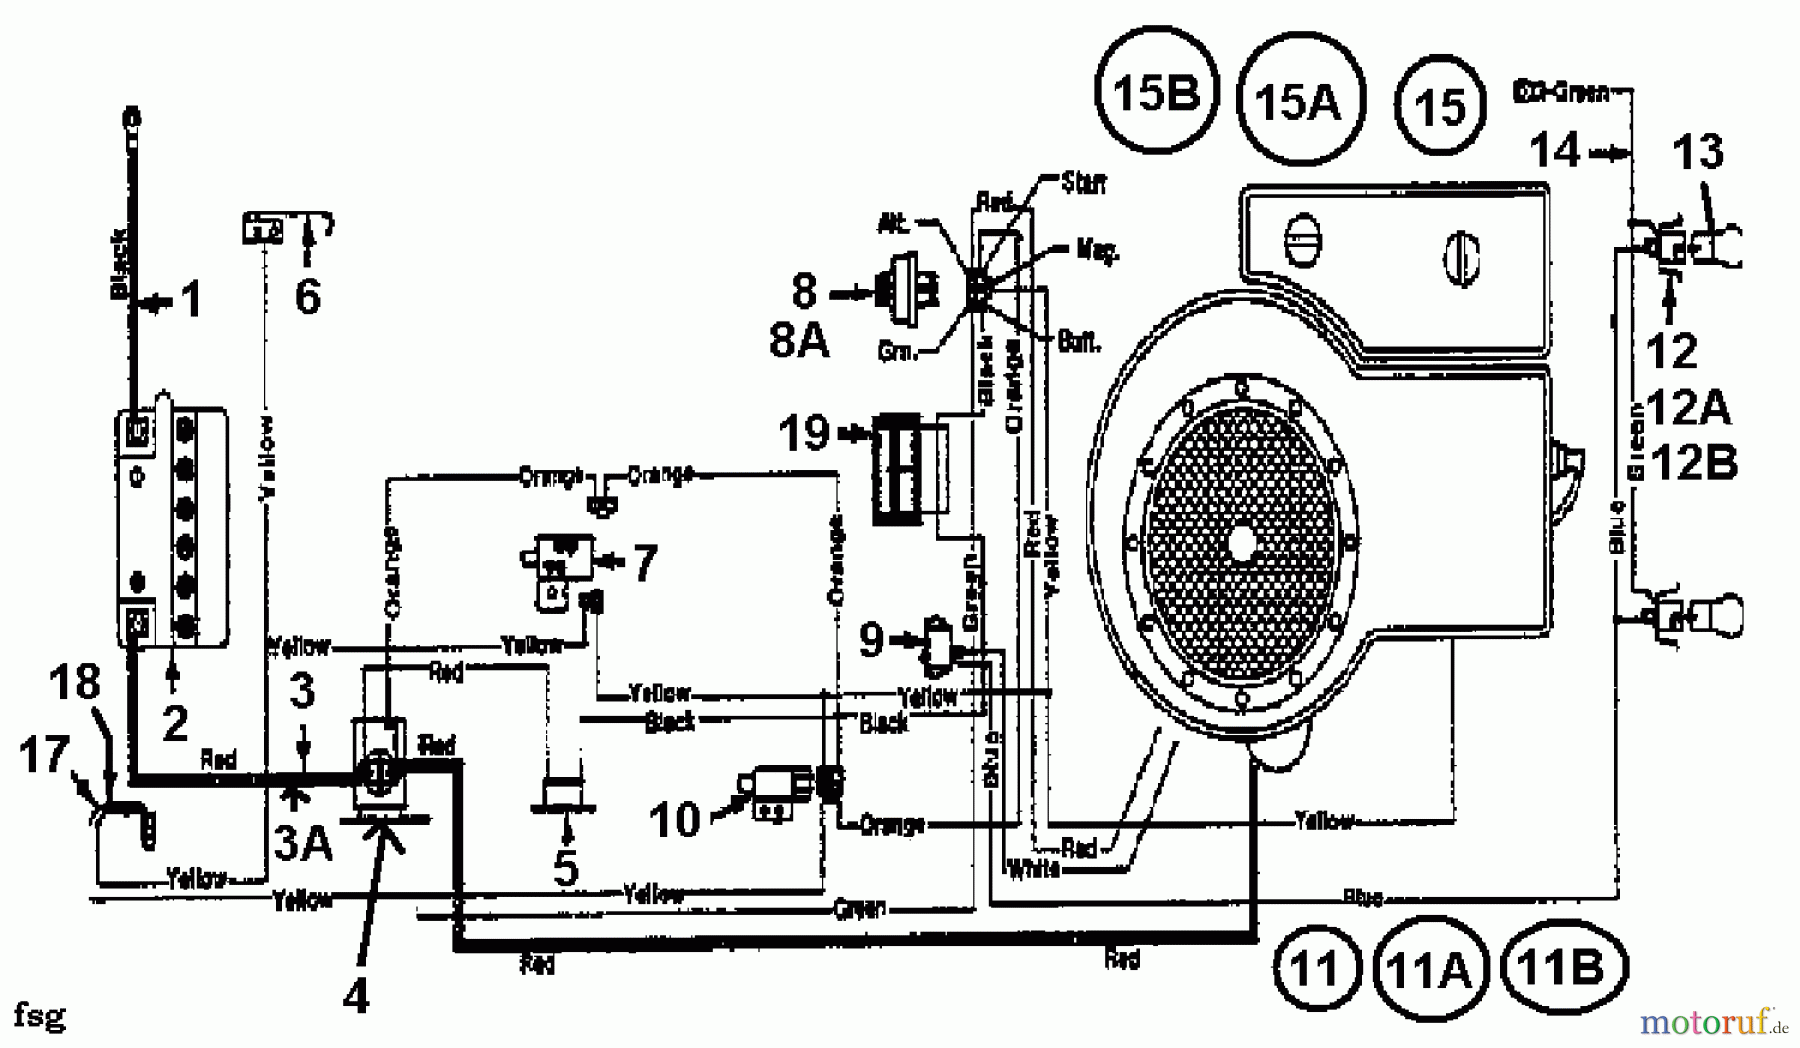  MTD Rasentraktoren 12/91 133I470E653  (1993) Schaltplan Einzylinder